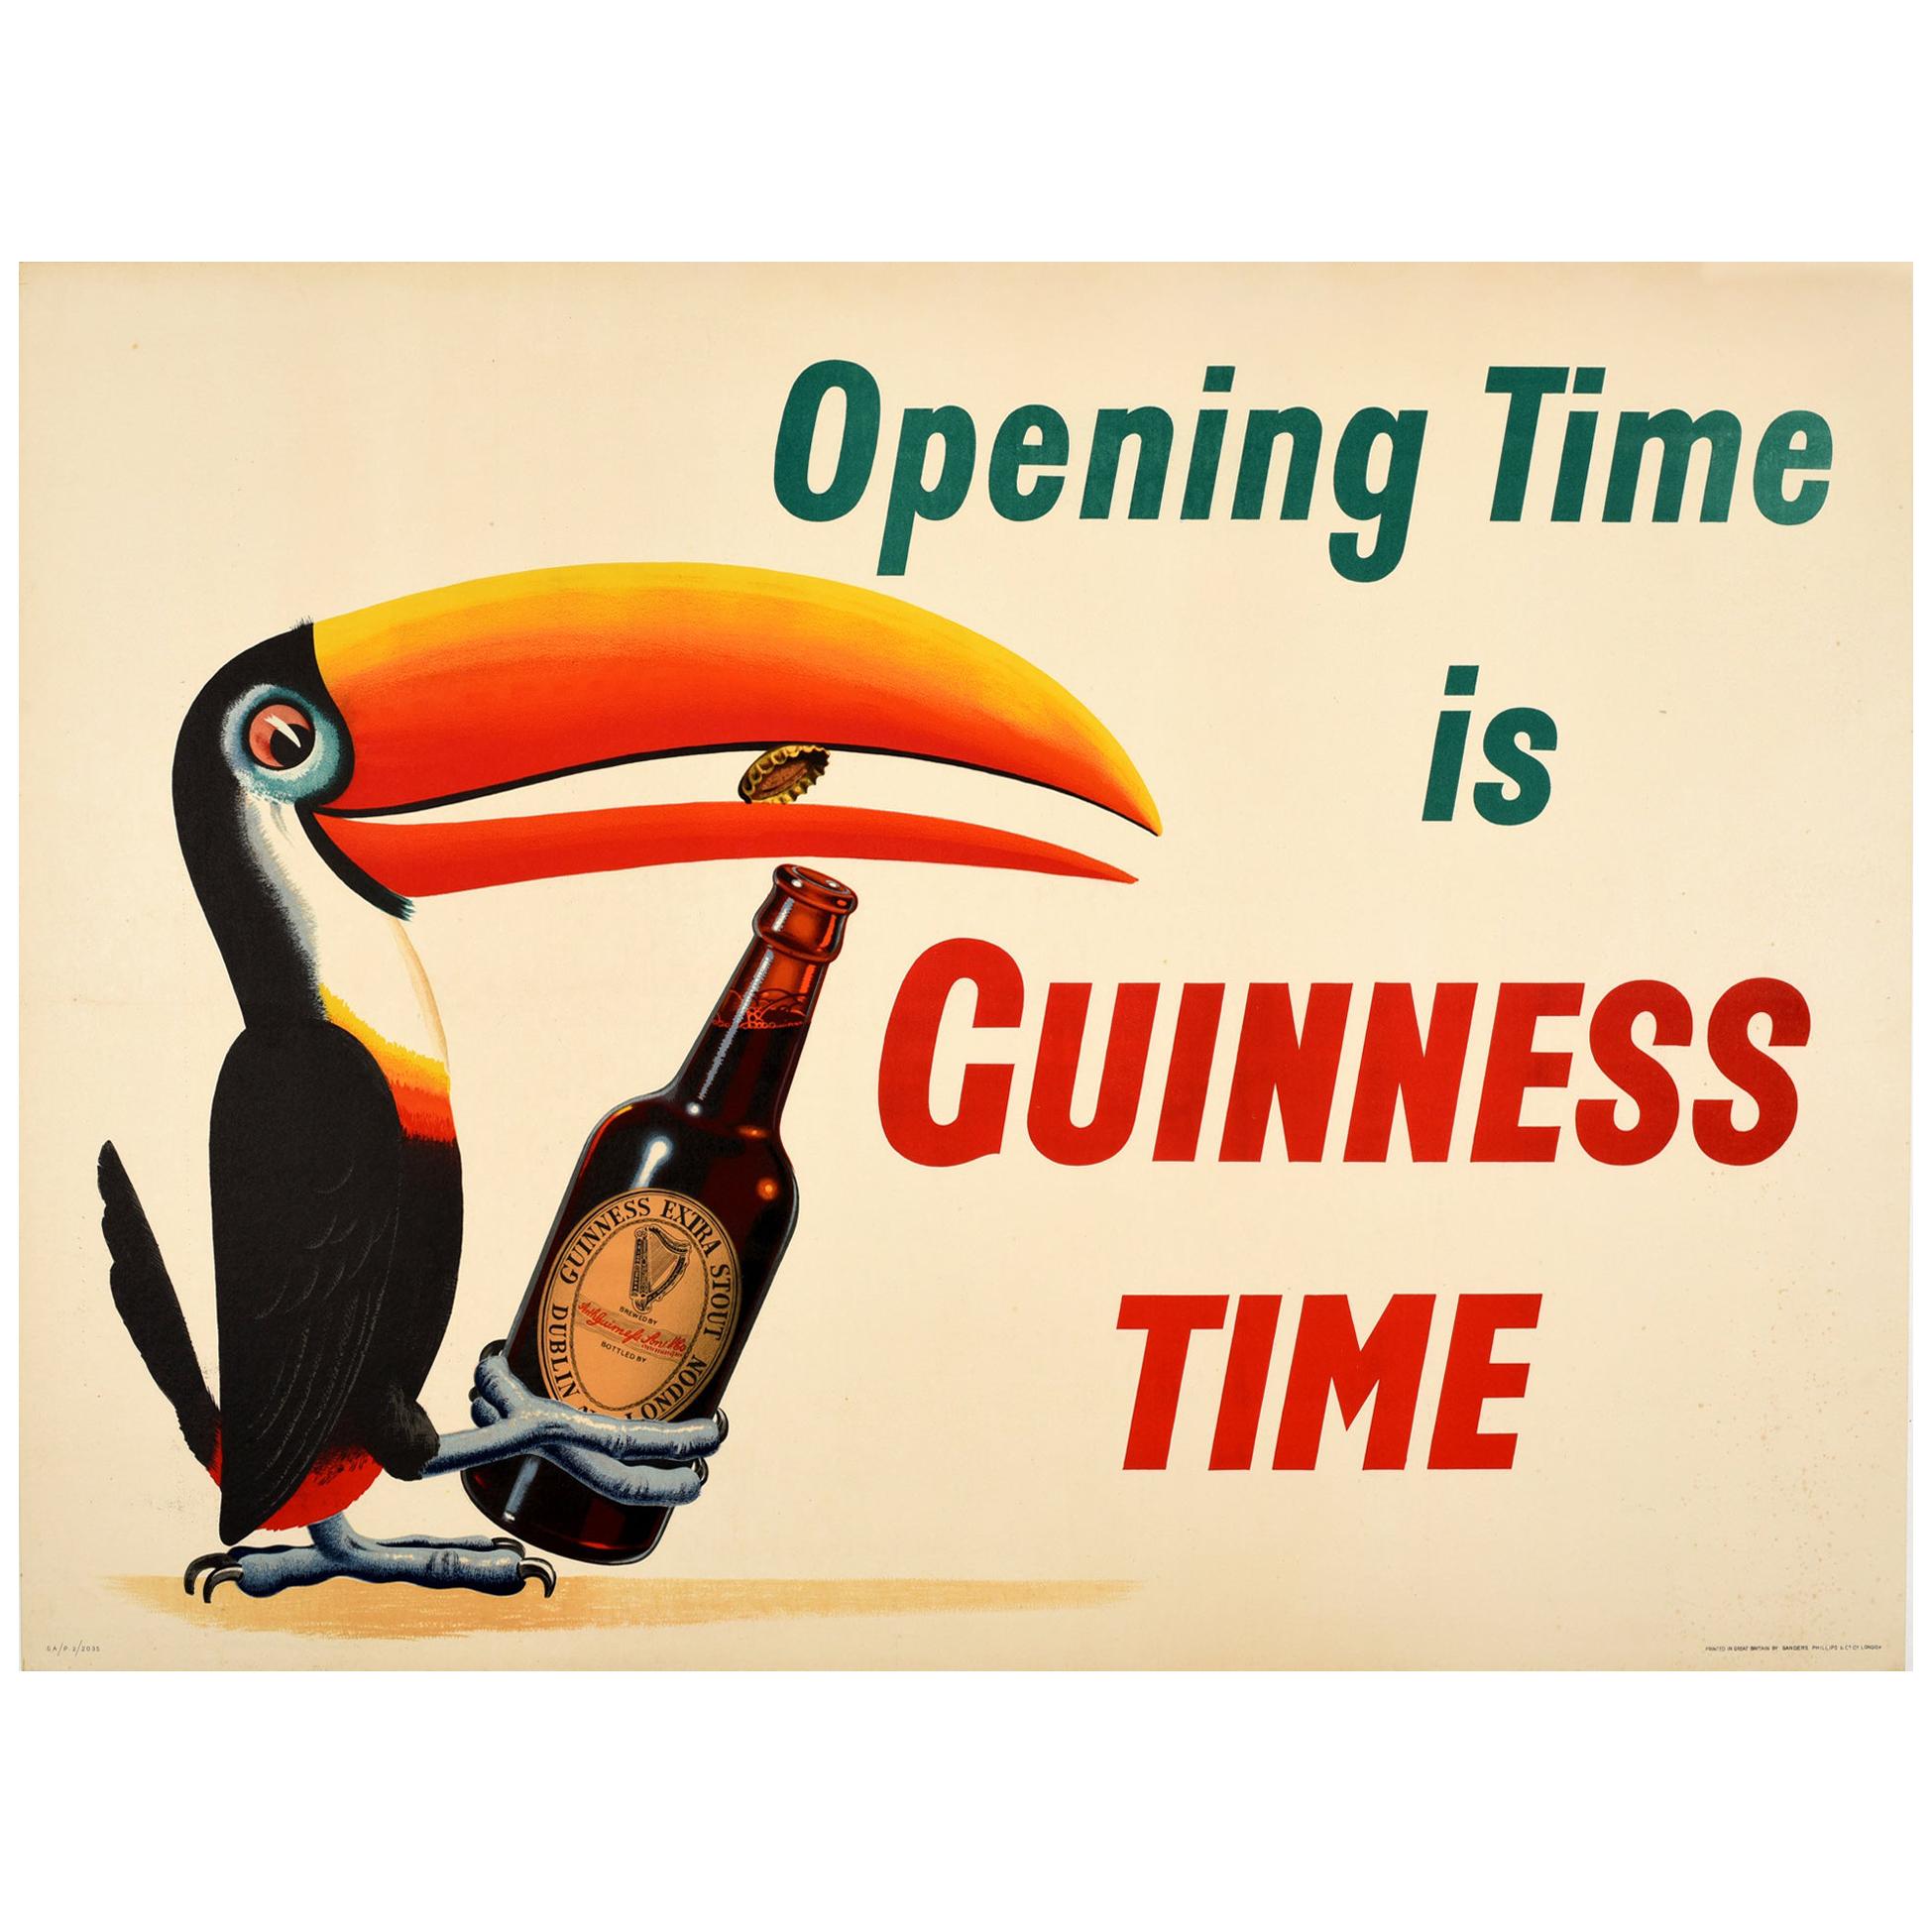 Affiche originale ancienne de boisson "Opening Time is Guinness Time" avec le dessin iconique du toucan